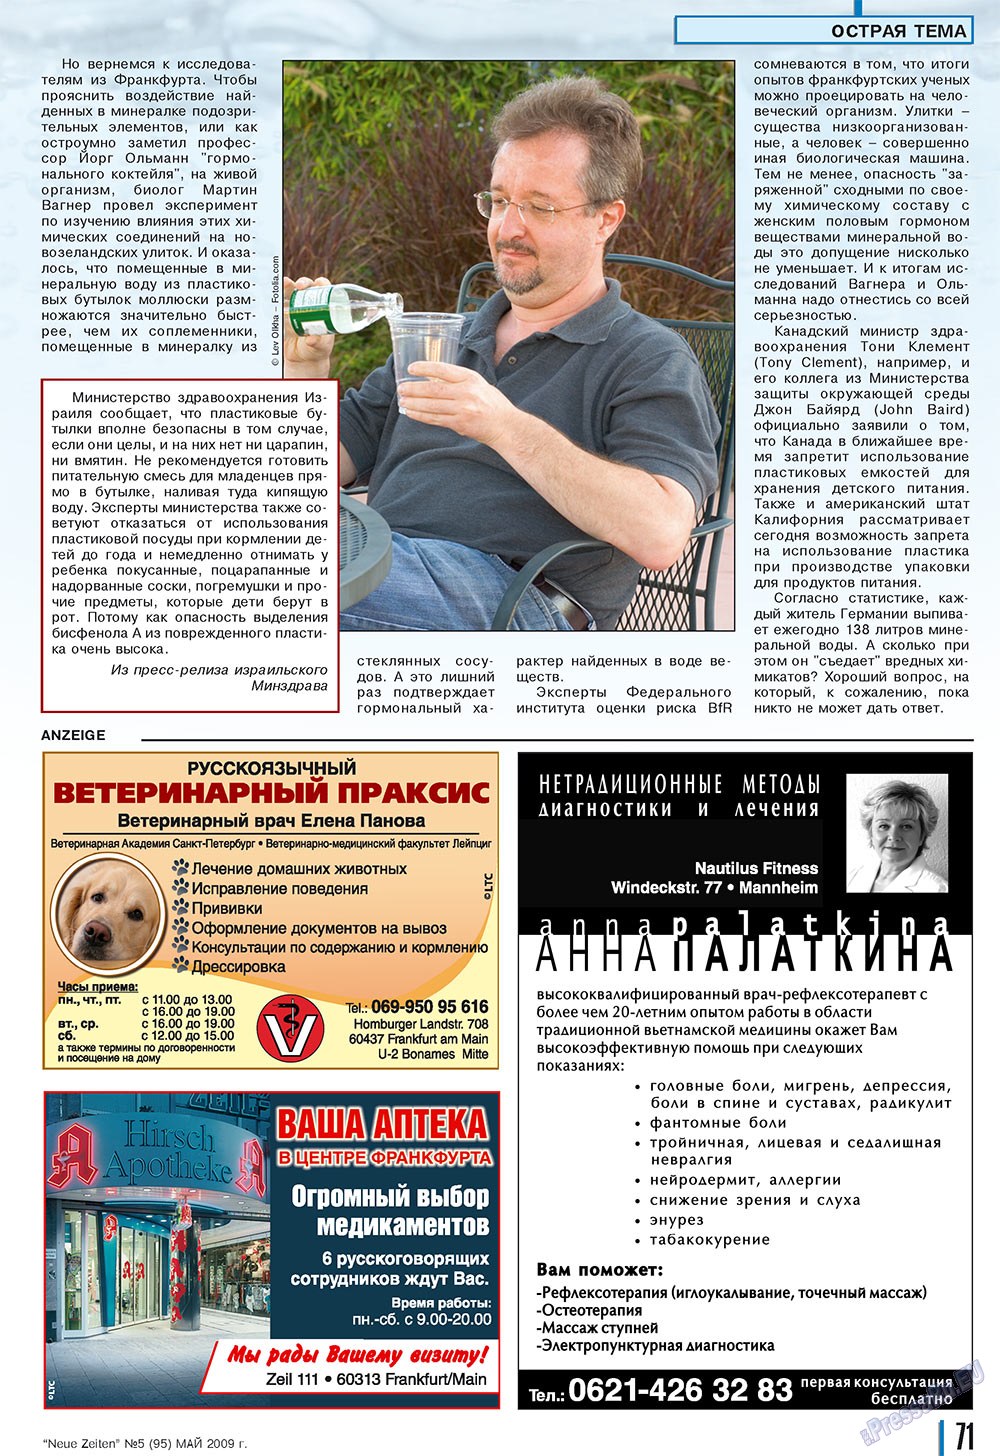 Neue Zeiten, журнал. 2009 №5 стр.71